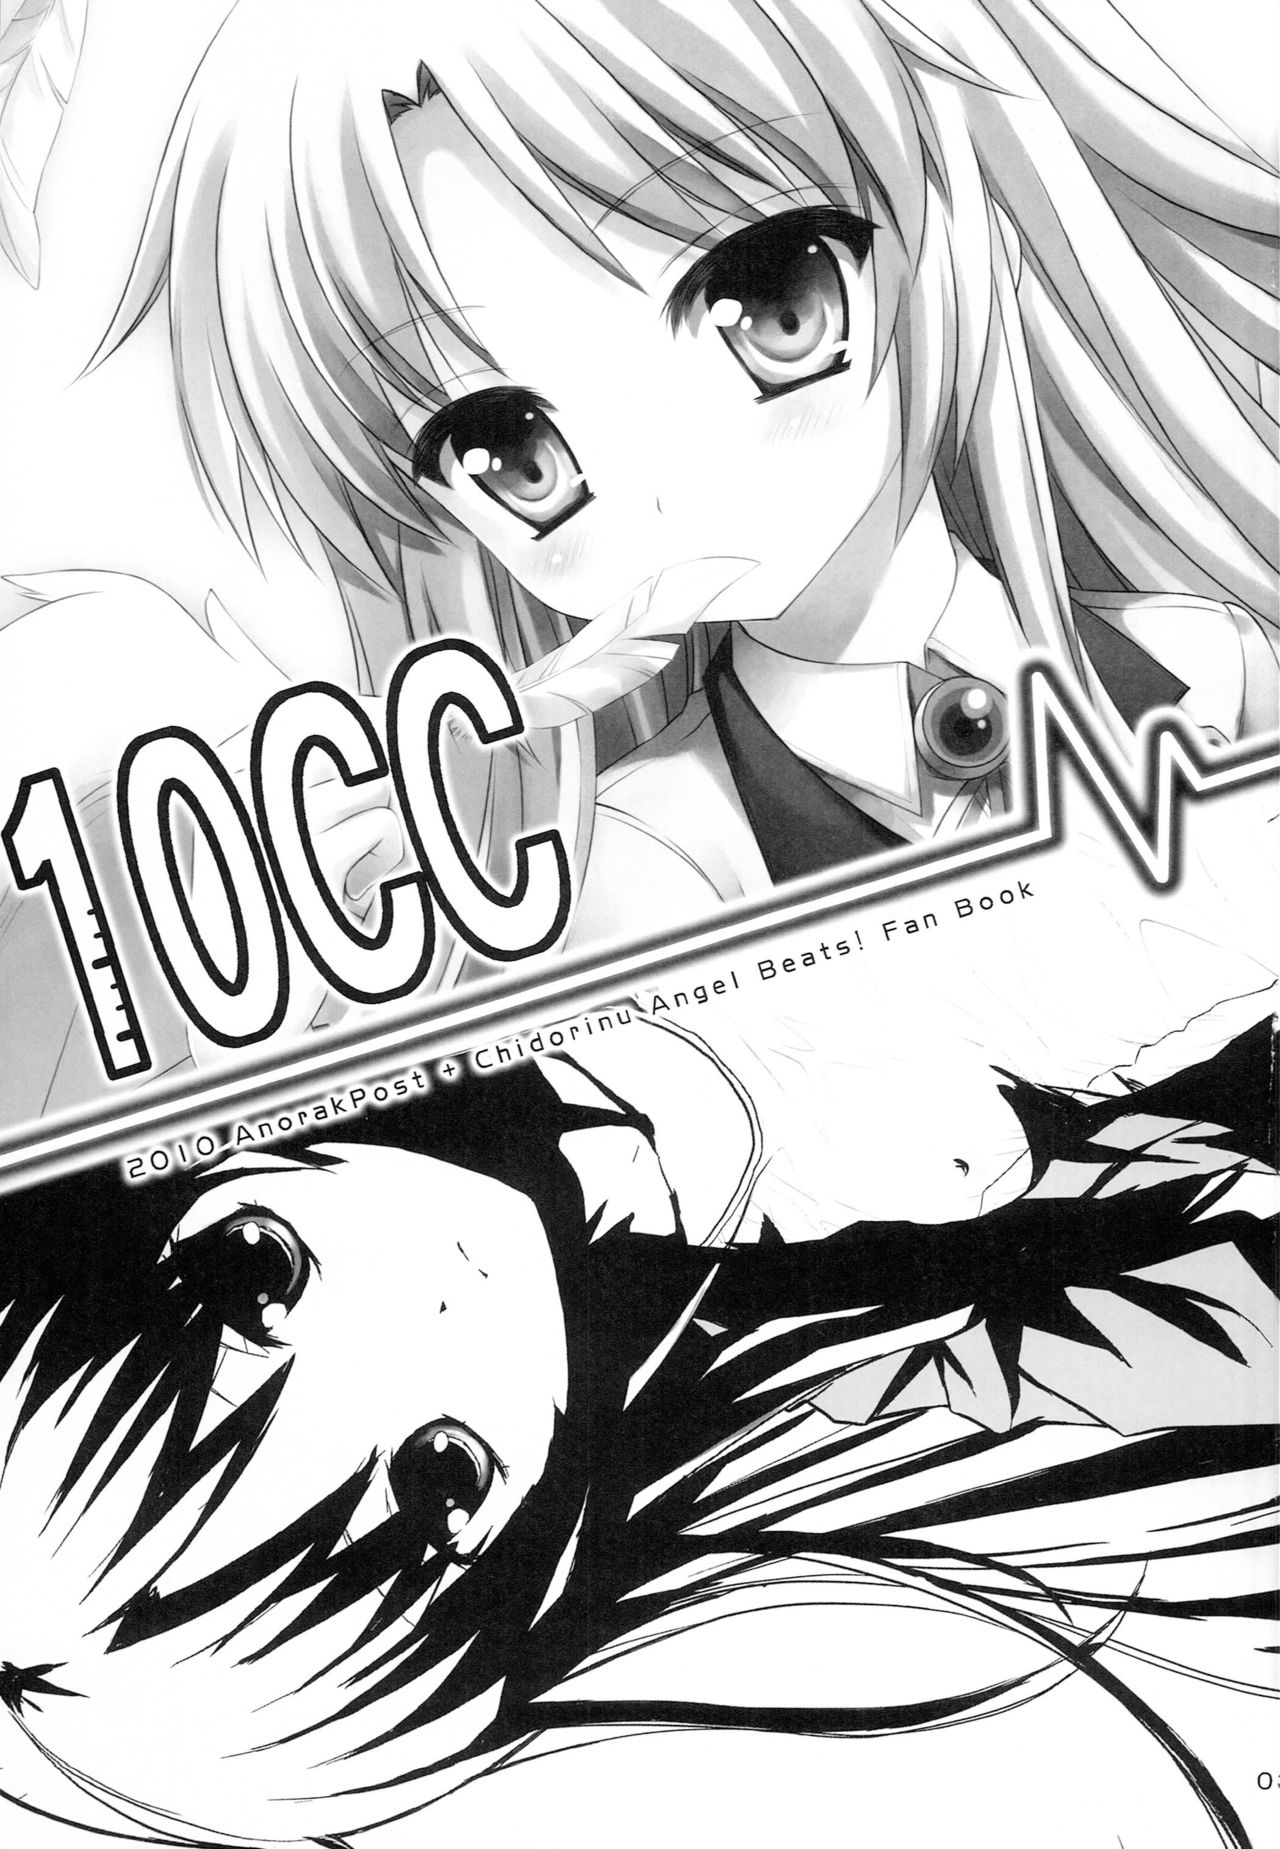 [AnorakPost、チドリヌ (あきよしよしあき、チドリヌ)] 10CC (Angel Beats!)